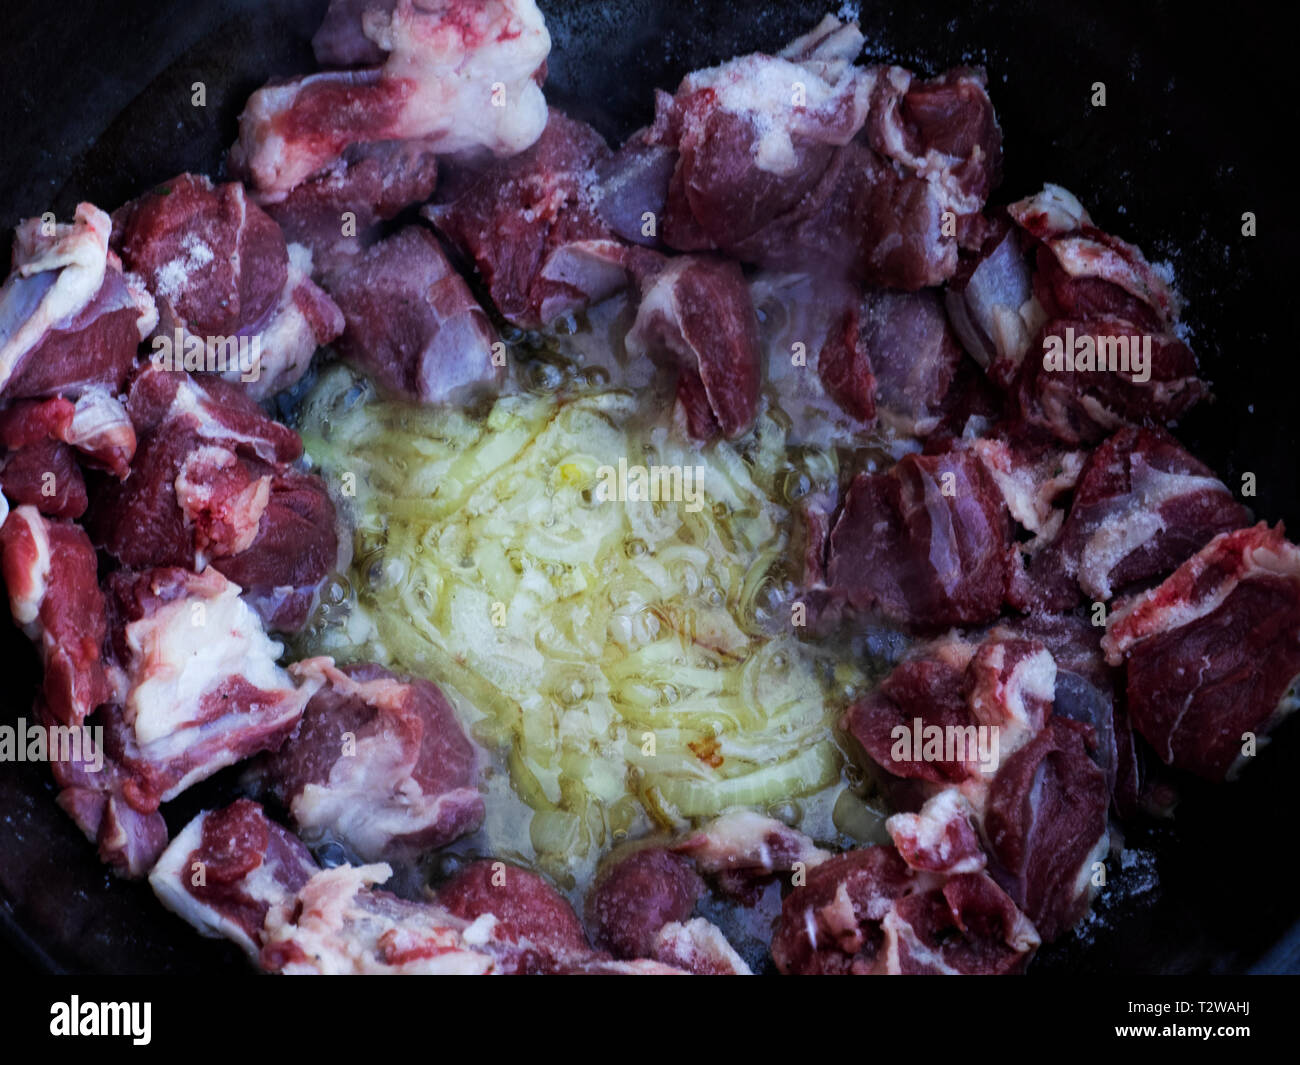 https://c8.alamy.com/compes/t2wahj/cordero-visto-siendo-anadido-a-cebolla-frita-pilaf-esta-hecho-de-carne-de-cordero-o-vacuno-arroz-zanahorias-y-cebollas-con-especias-no-solo-es-popular-entre-los-pueblos-turcos-normalmente-este-plato-se-prepara-en-una-olla-de-hierro-fundido-especial-llamado-caldero-y-son-de-diferentes-tamanos-que-van-desde-8-litros-hasta-1000-litros-hemos-utilizado-el-caldero-mas-pequeno-t2wahj.jpg